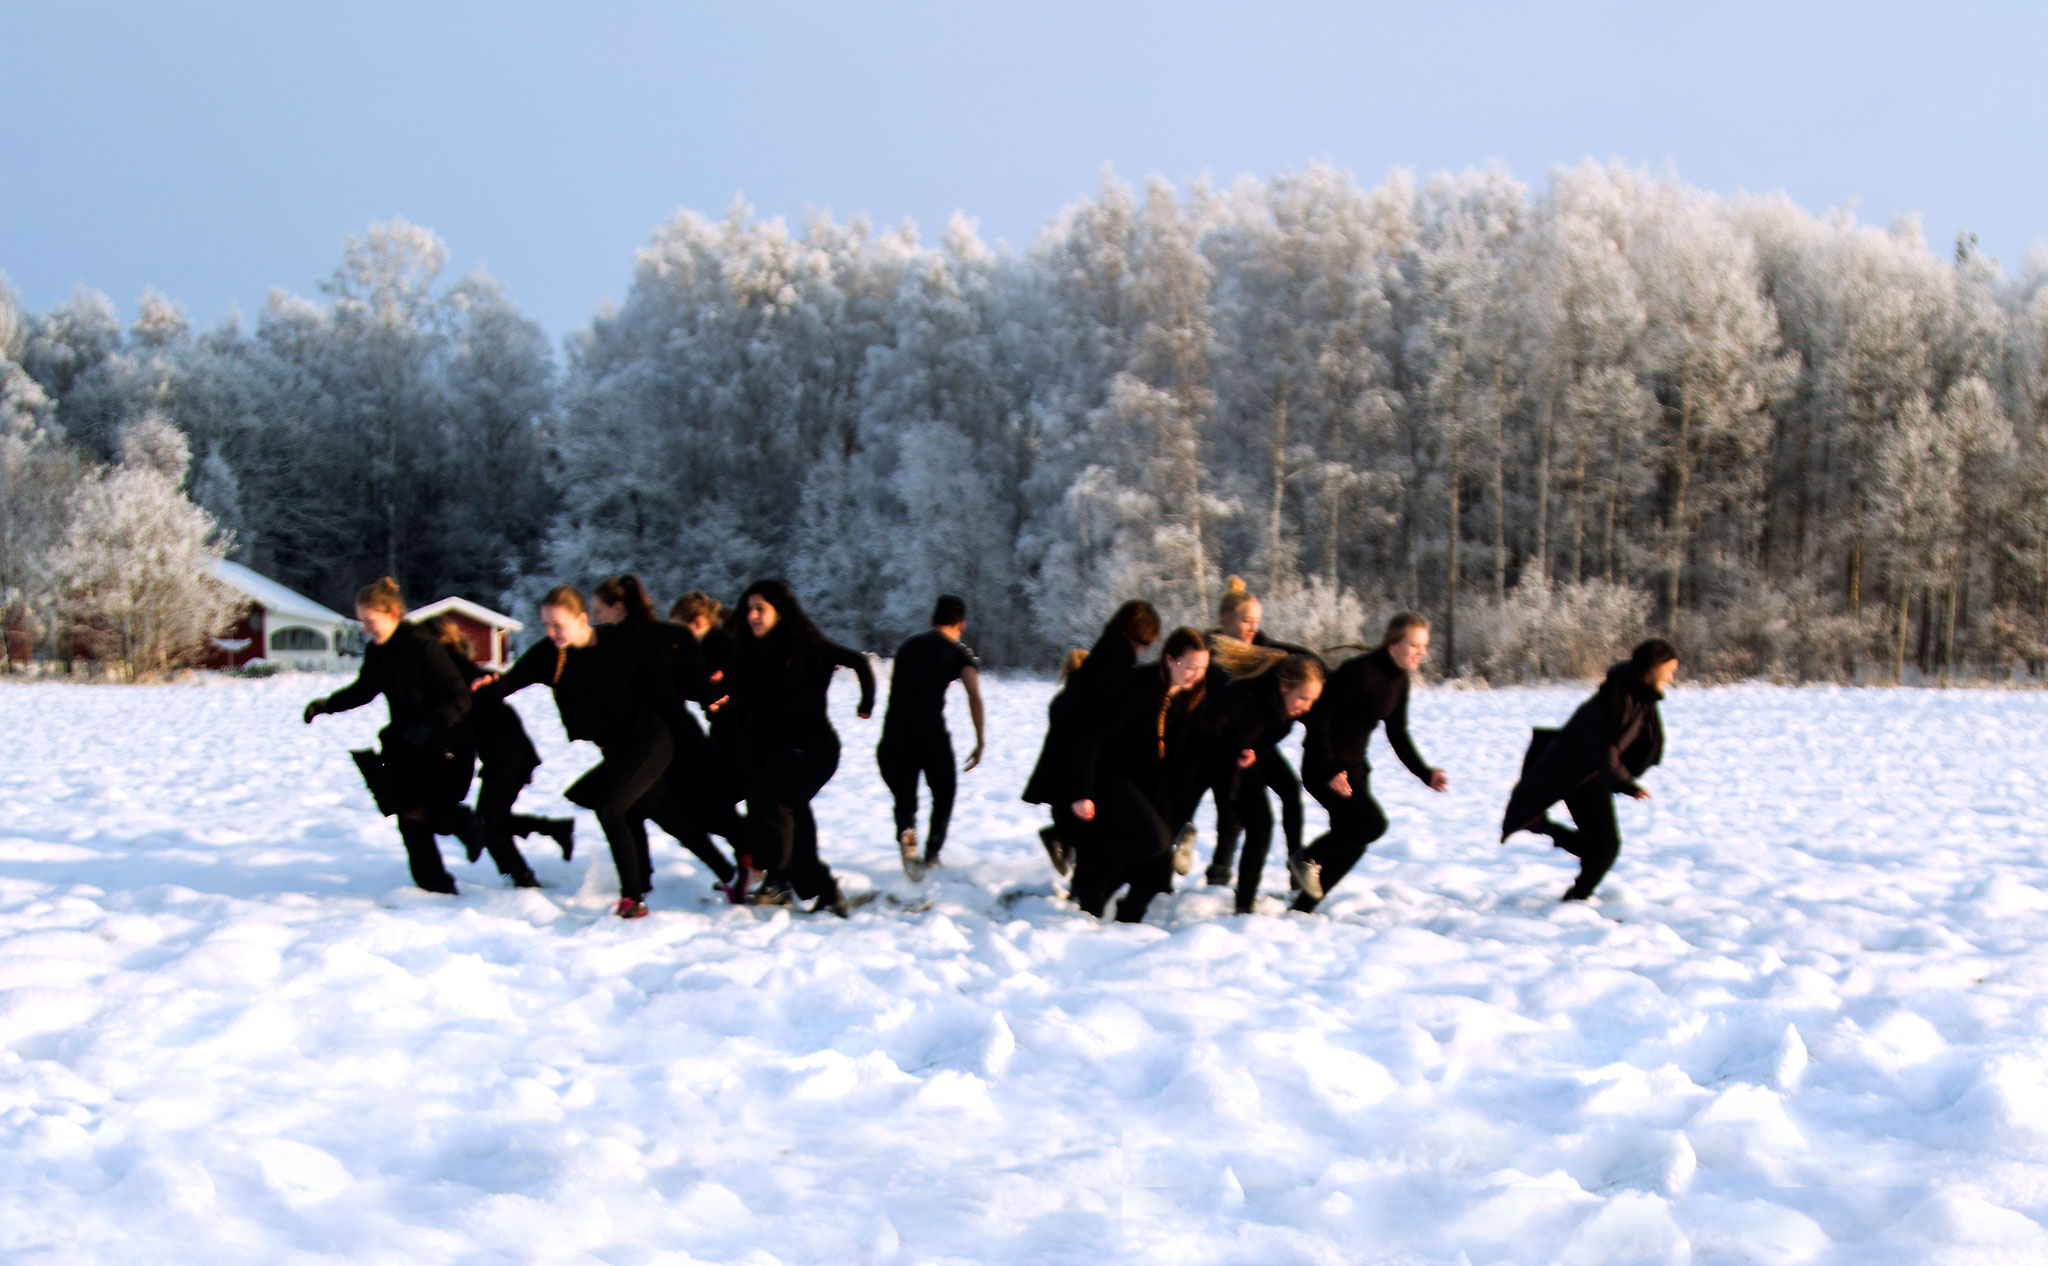 Ett vinterlandskap där svartklädda personer springer åt olika håll.